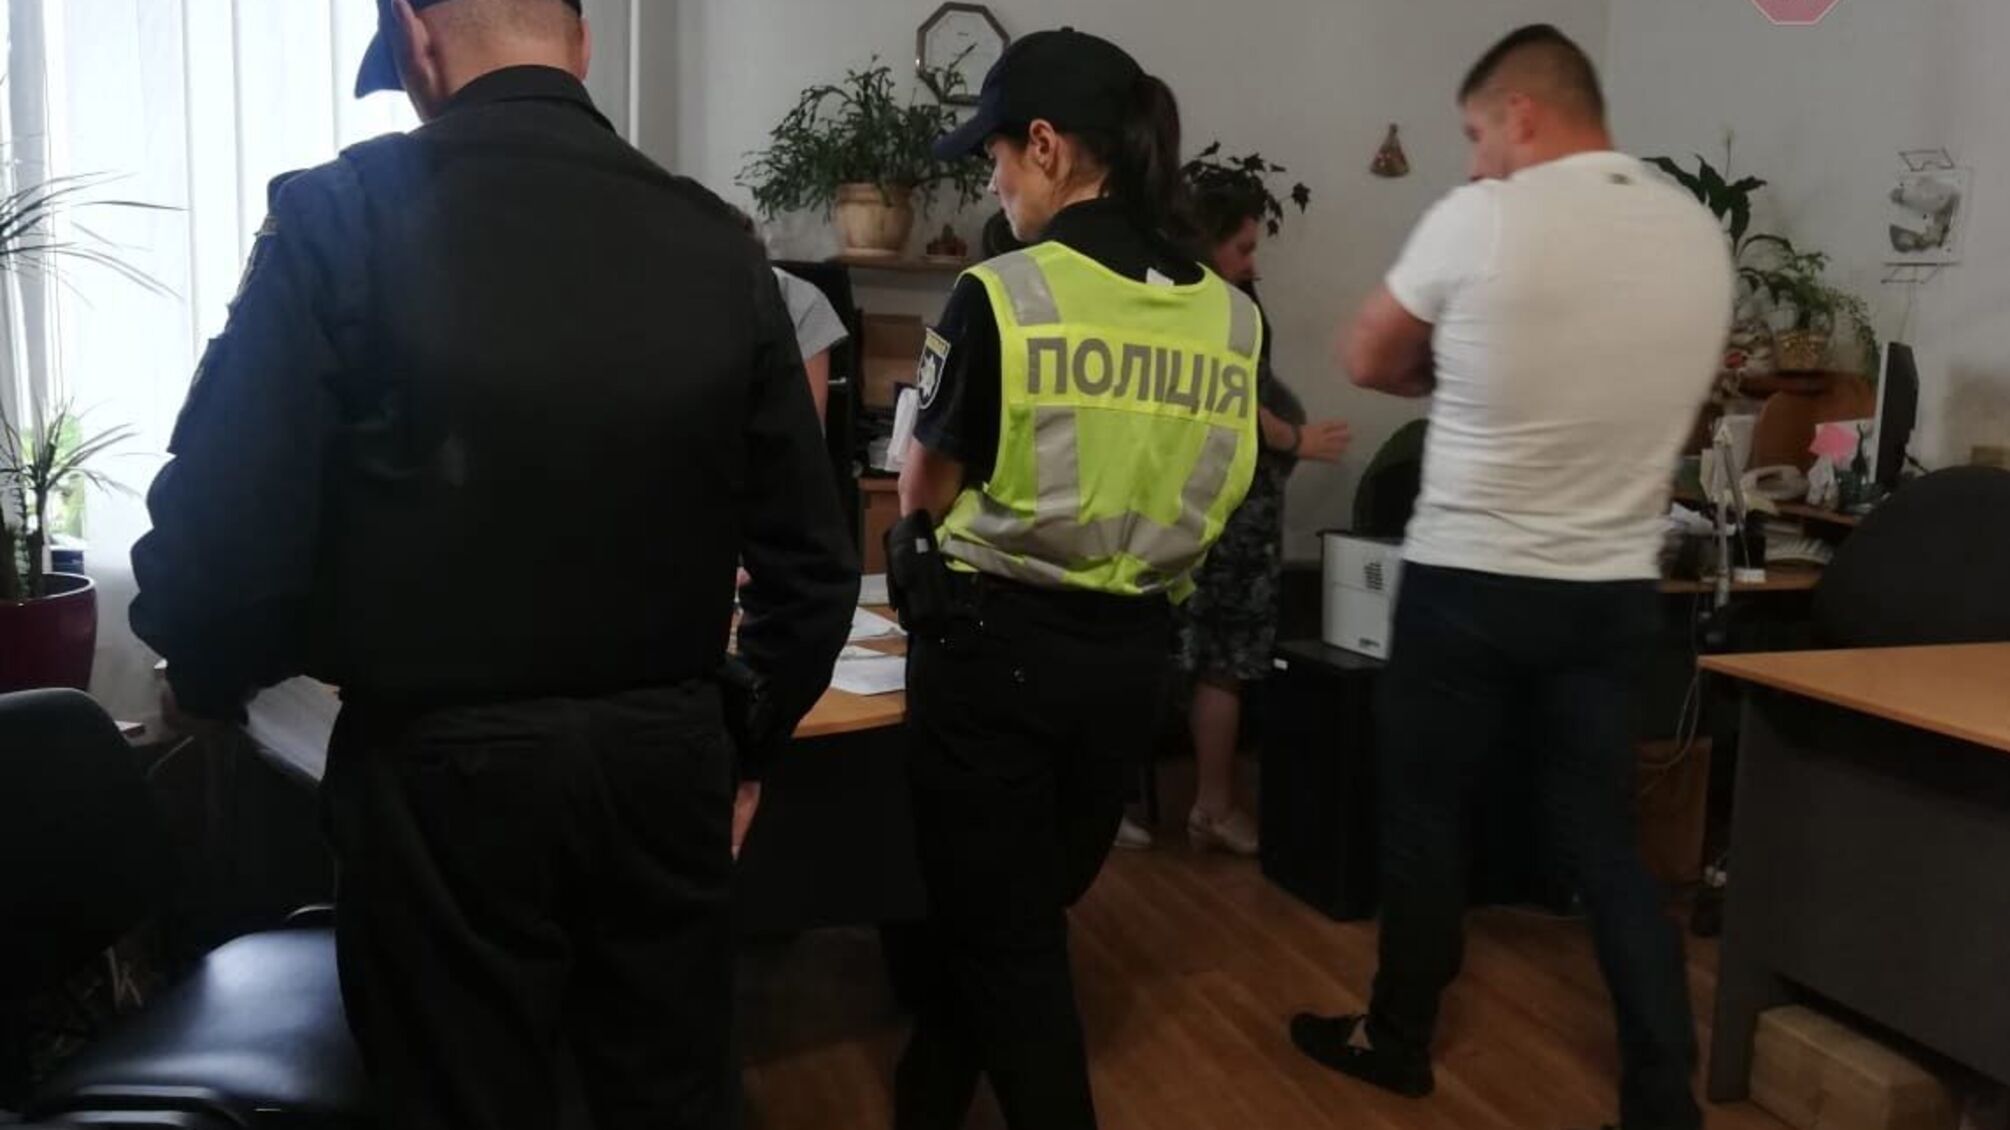 Тітушки, поліція, два директори одного КП та Київоблрада: у столиці скандал через звільнення кандидата в нардепи (ФОТО)